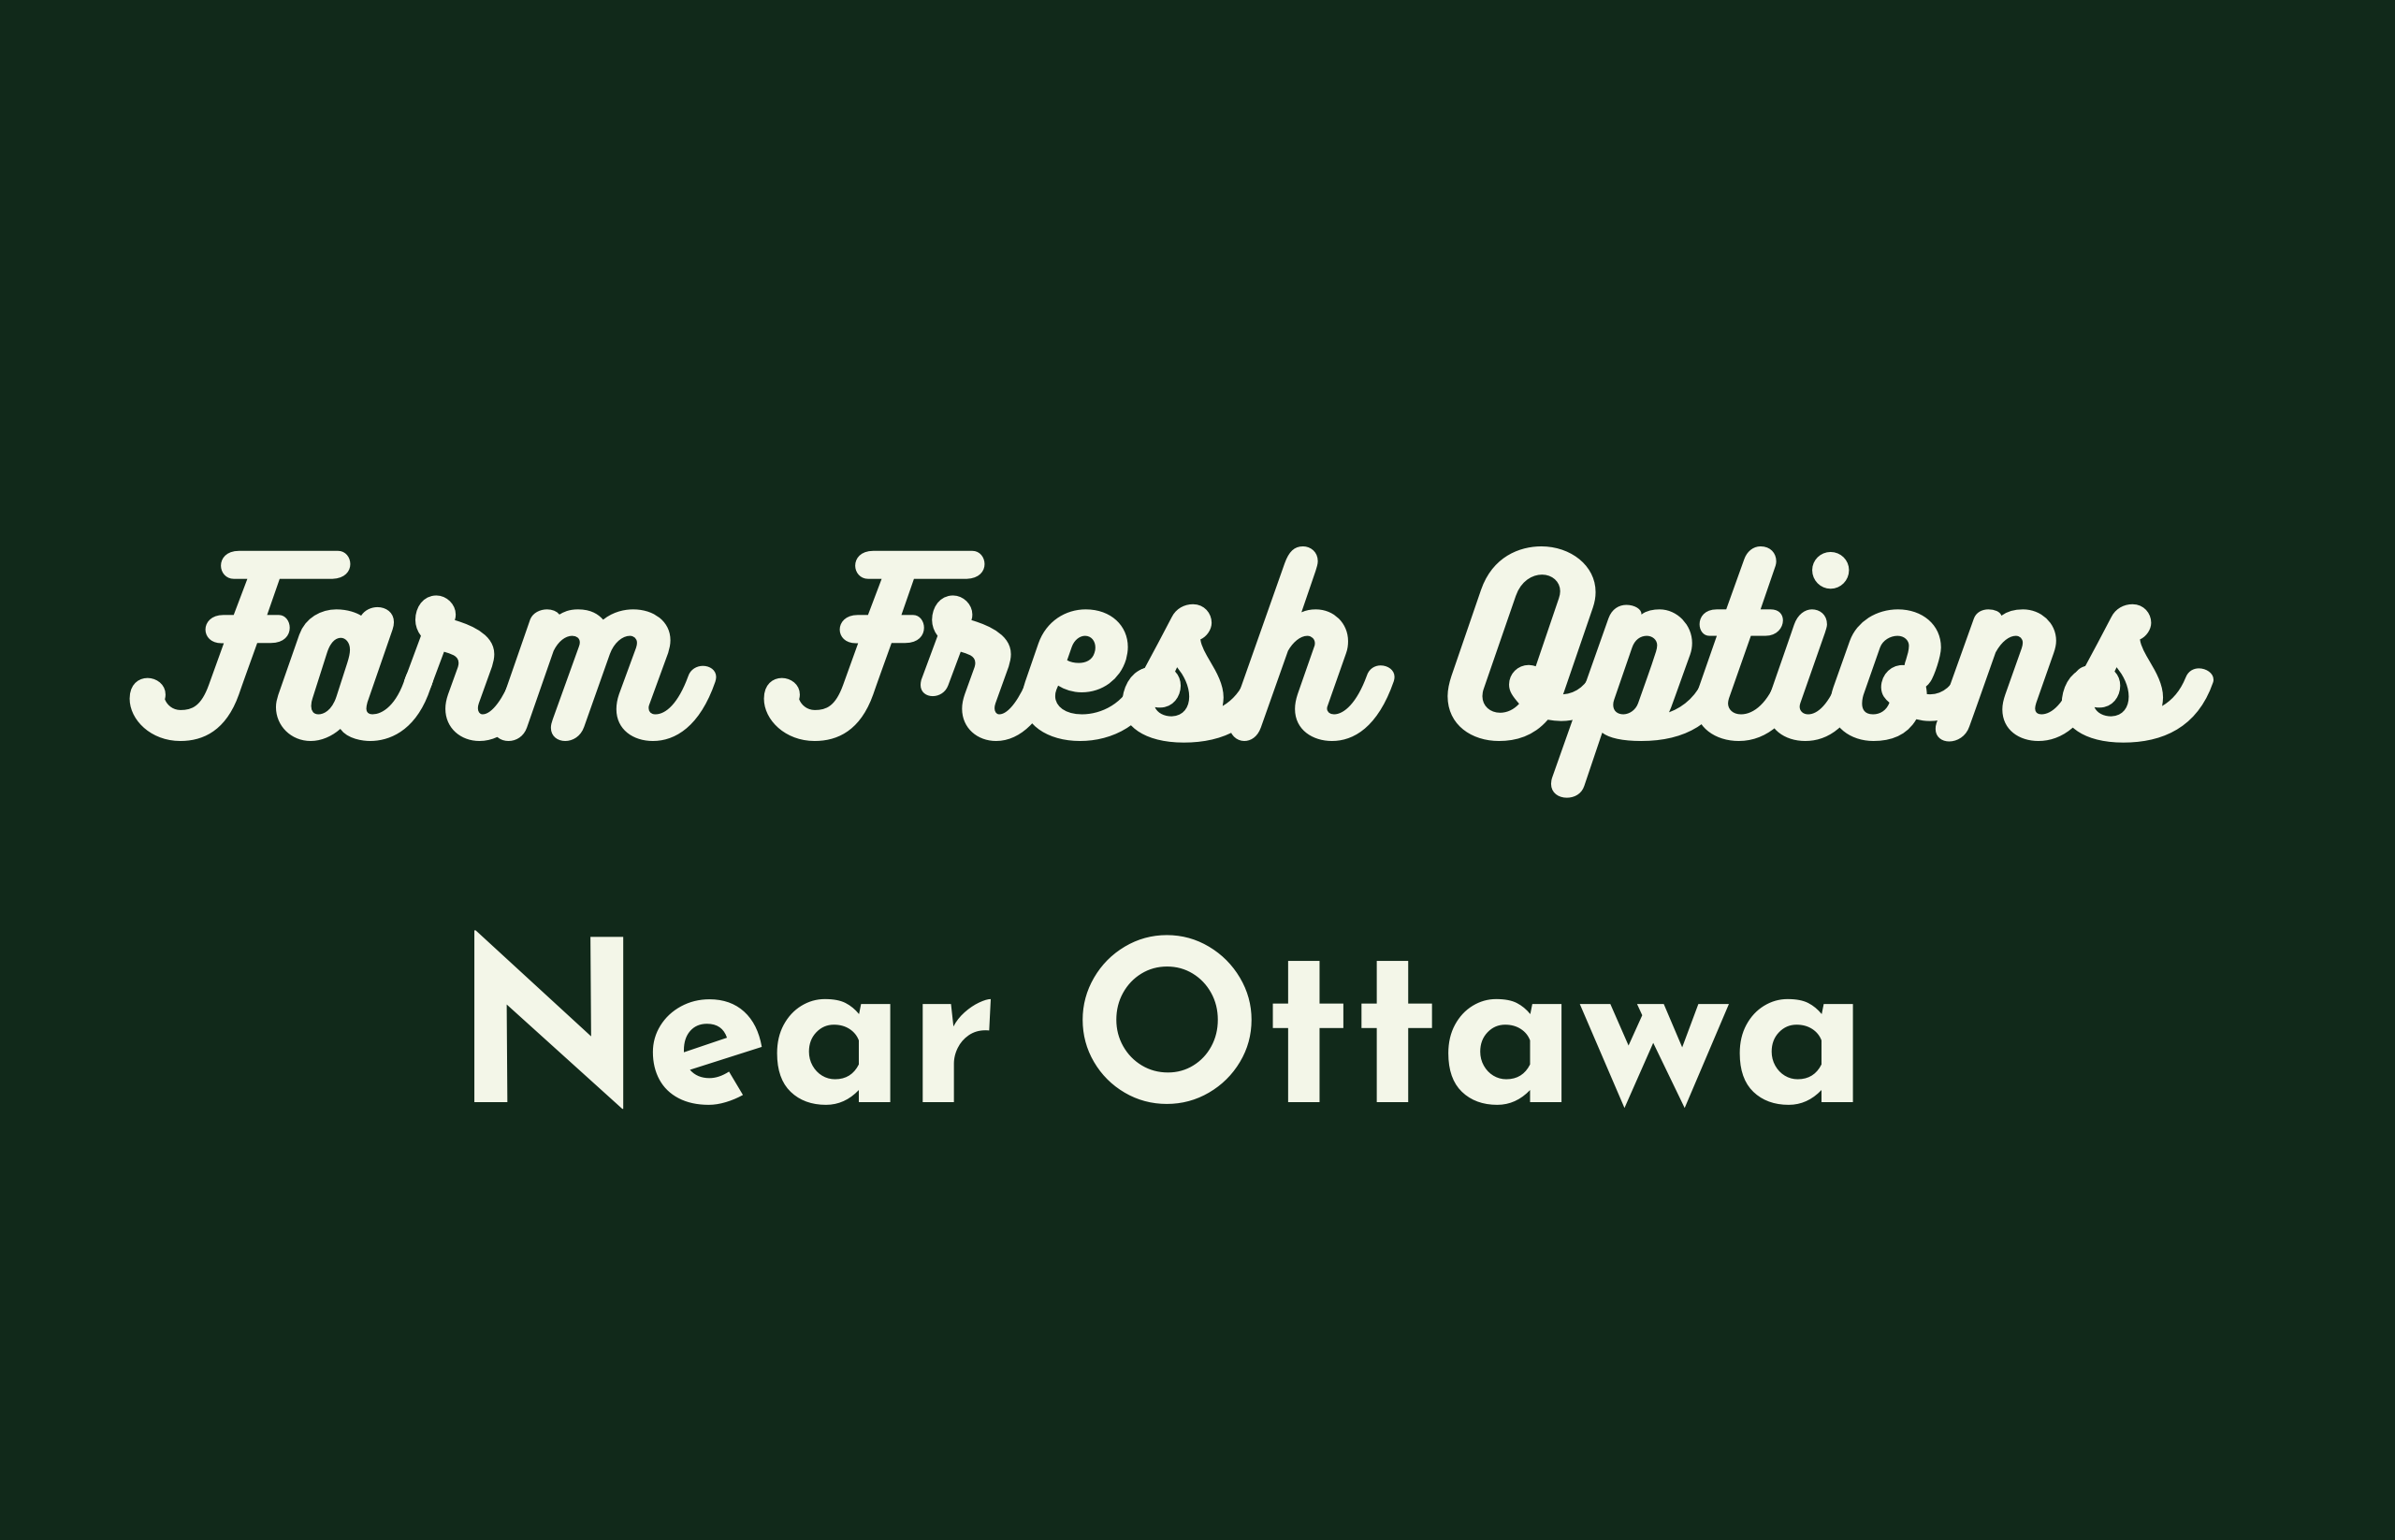 Farm fresh options near Ottawa